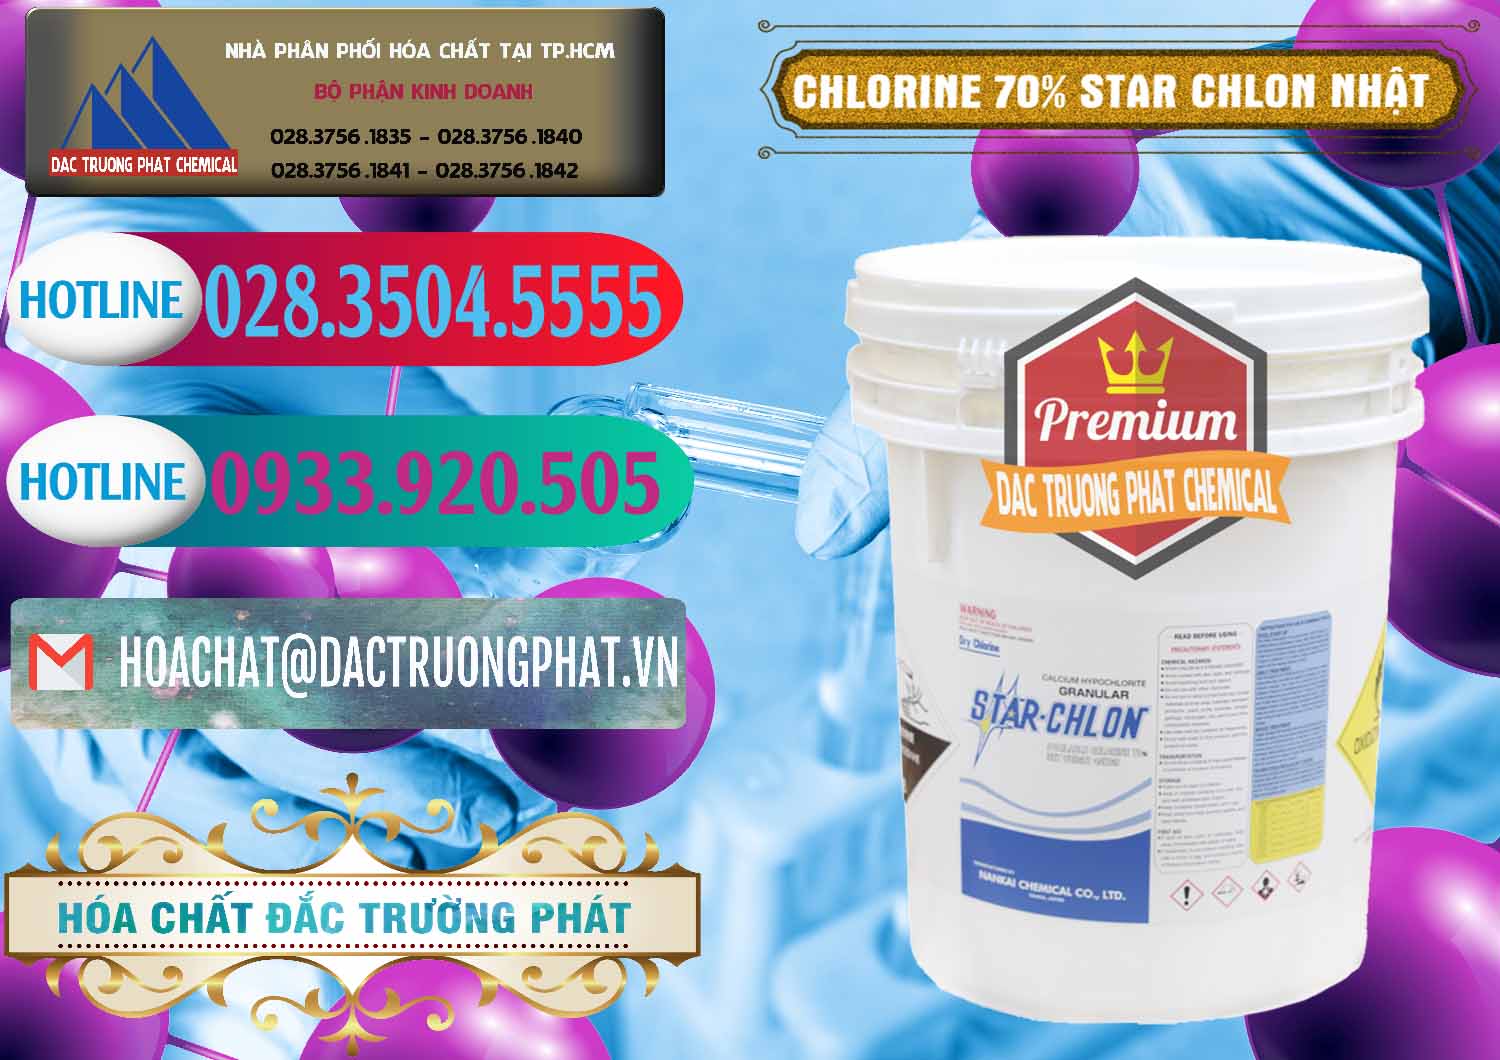 Nhà cung cấp và bán Clorin – Chlorine 70% Star Chlon Nhật Bản Japan - 0243 - Công ty nhập khẩu ( phân phối ) hóa chất tại TP.HCM - truongphat.vn